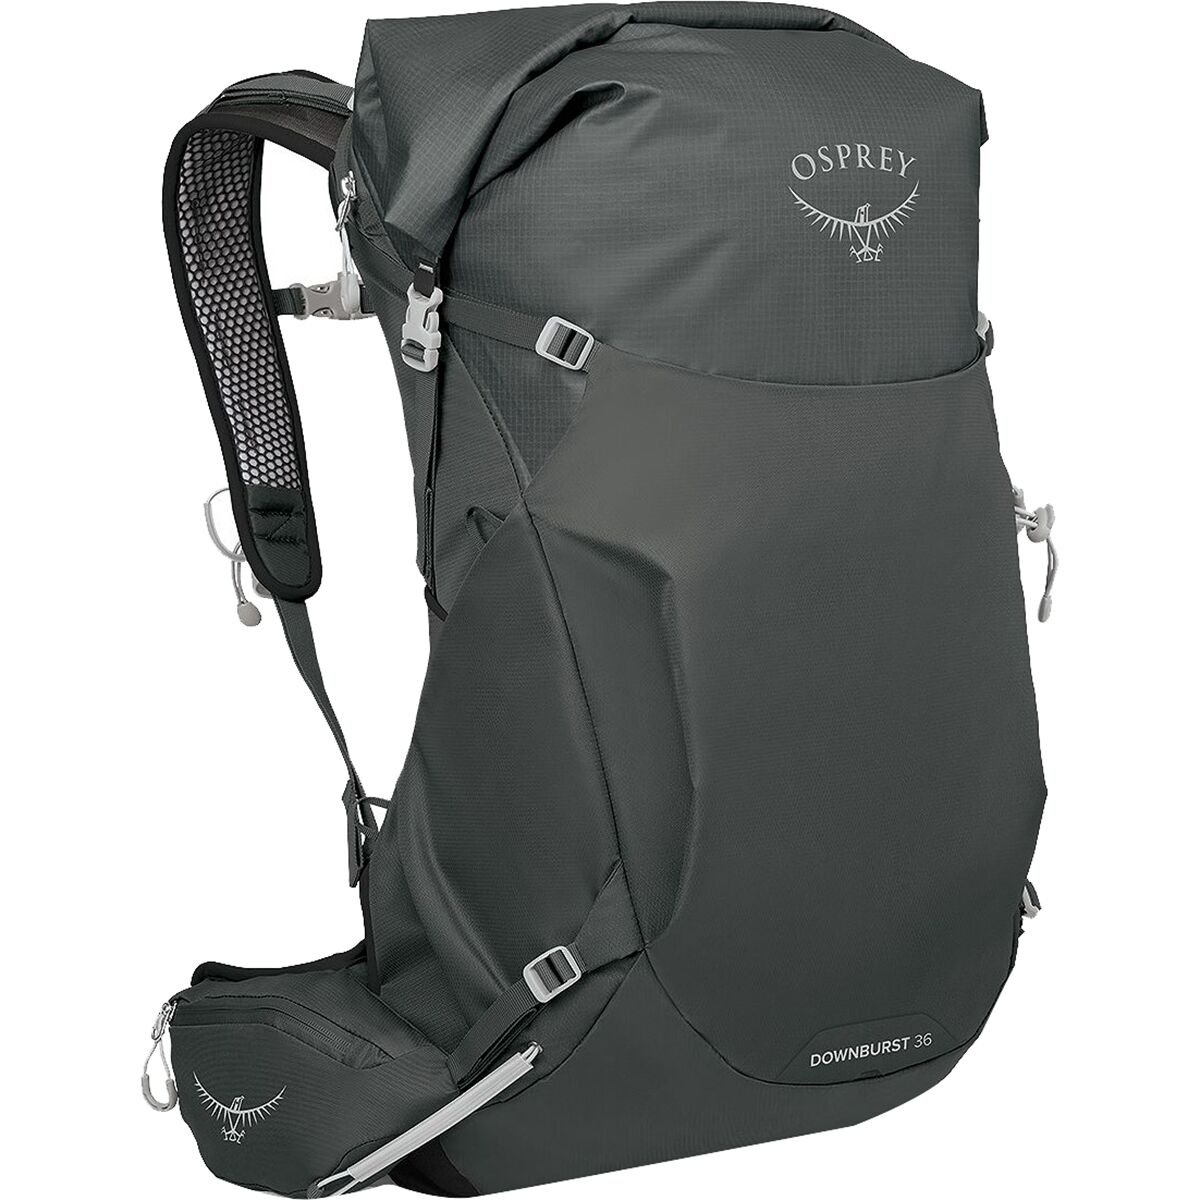 Рюкзак downburst 36 л. Osprey Packs, серый